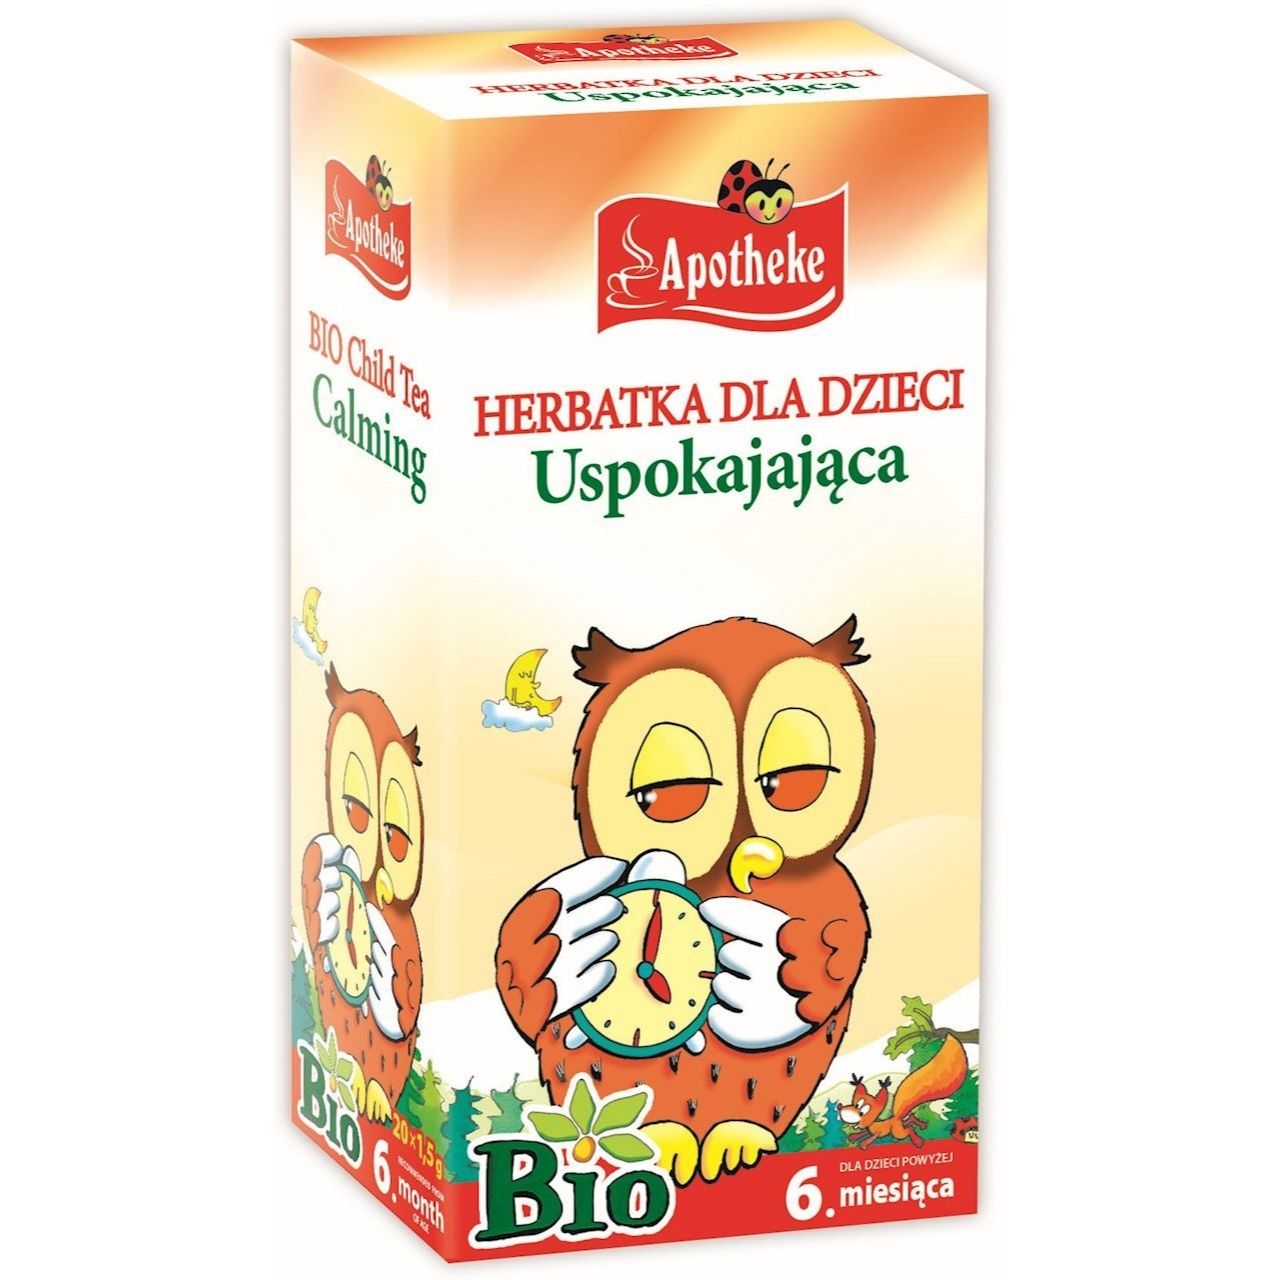 Herbata dla dzieci - uspokajająca BIO (20x 1,5 g) 30 g - Apotheke